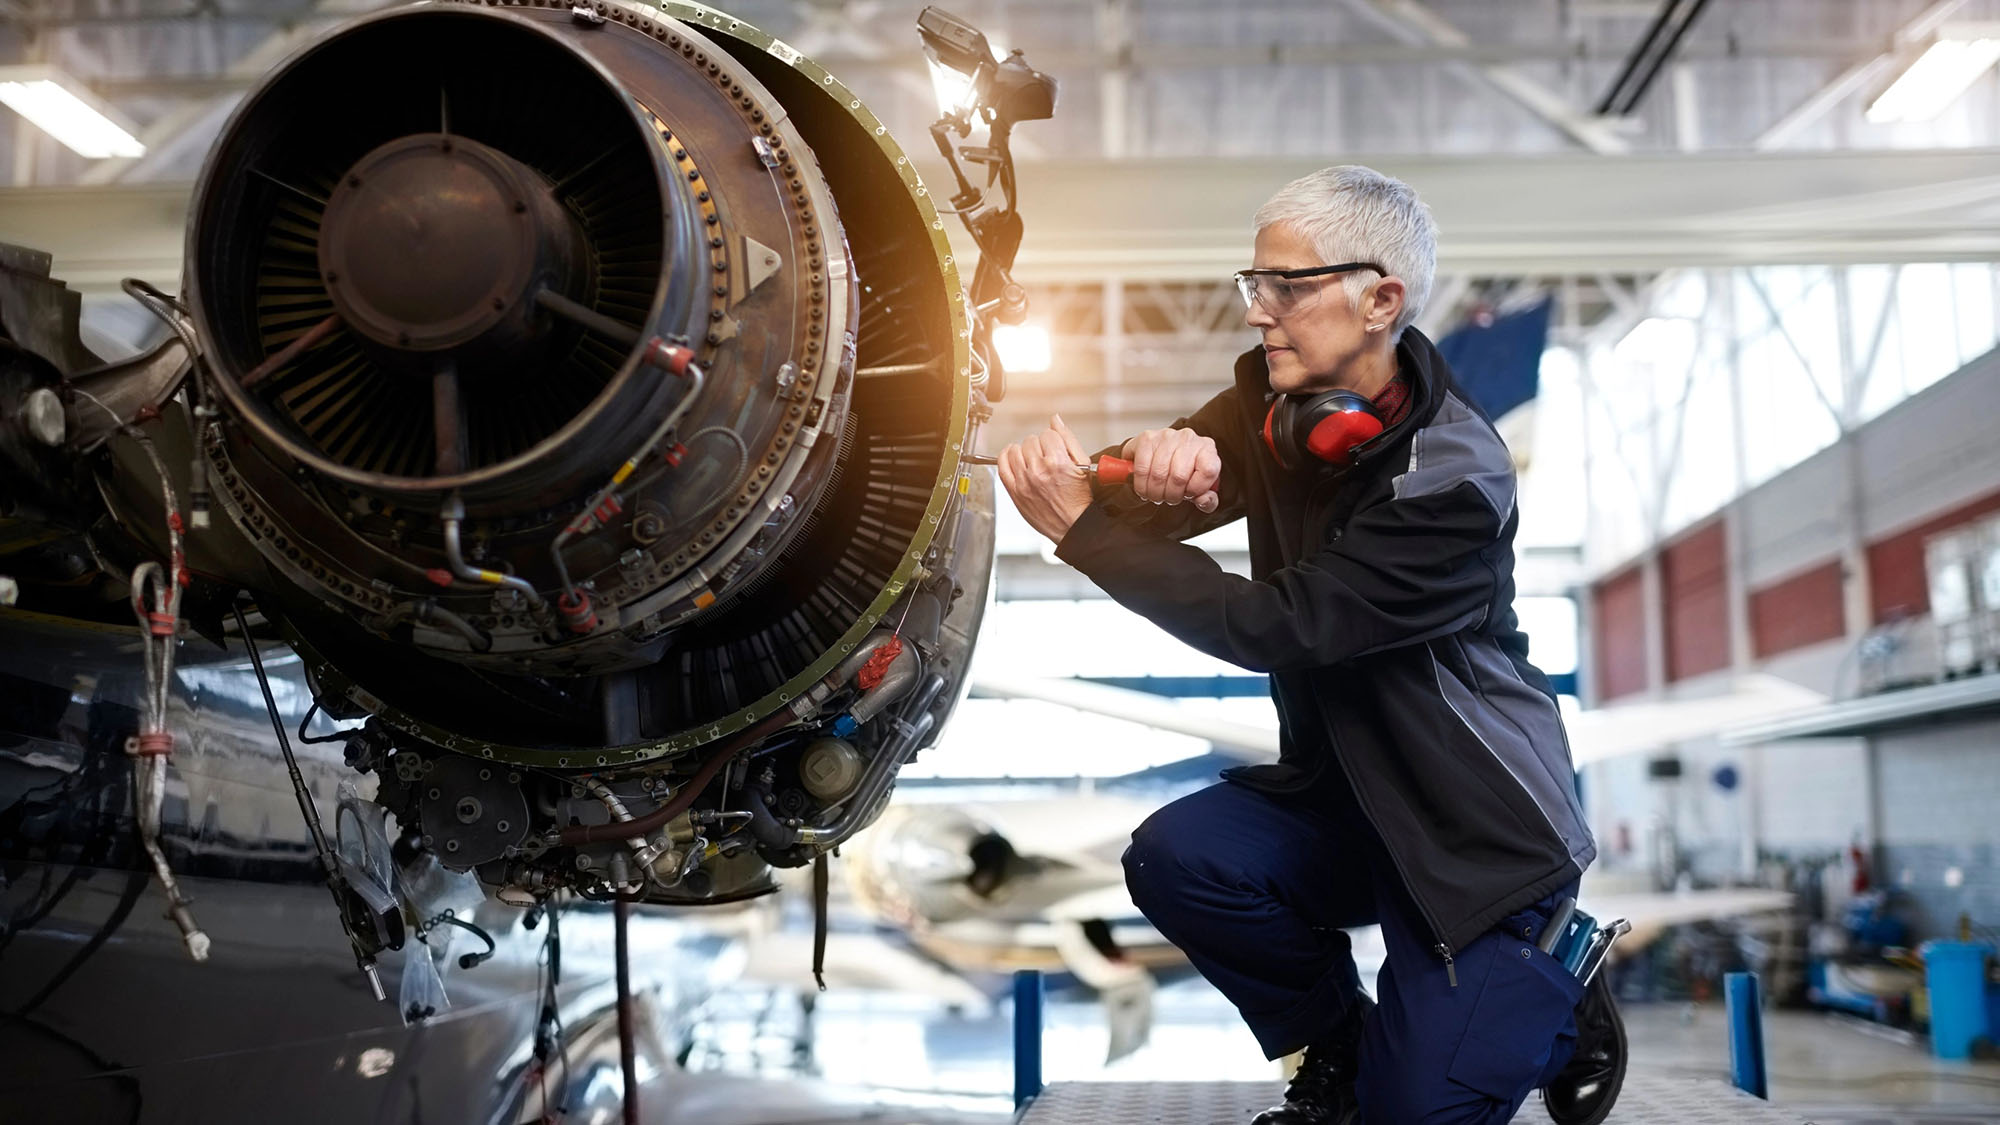 Woman engineer performing essential repairs on jet engine